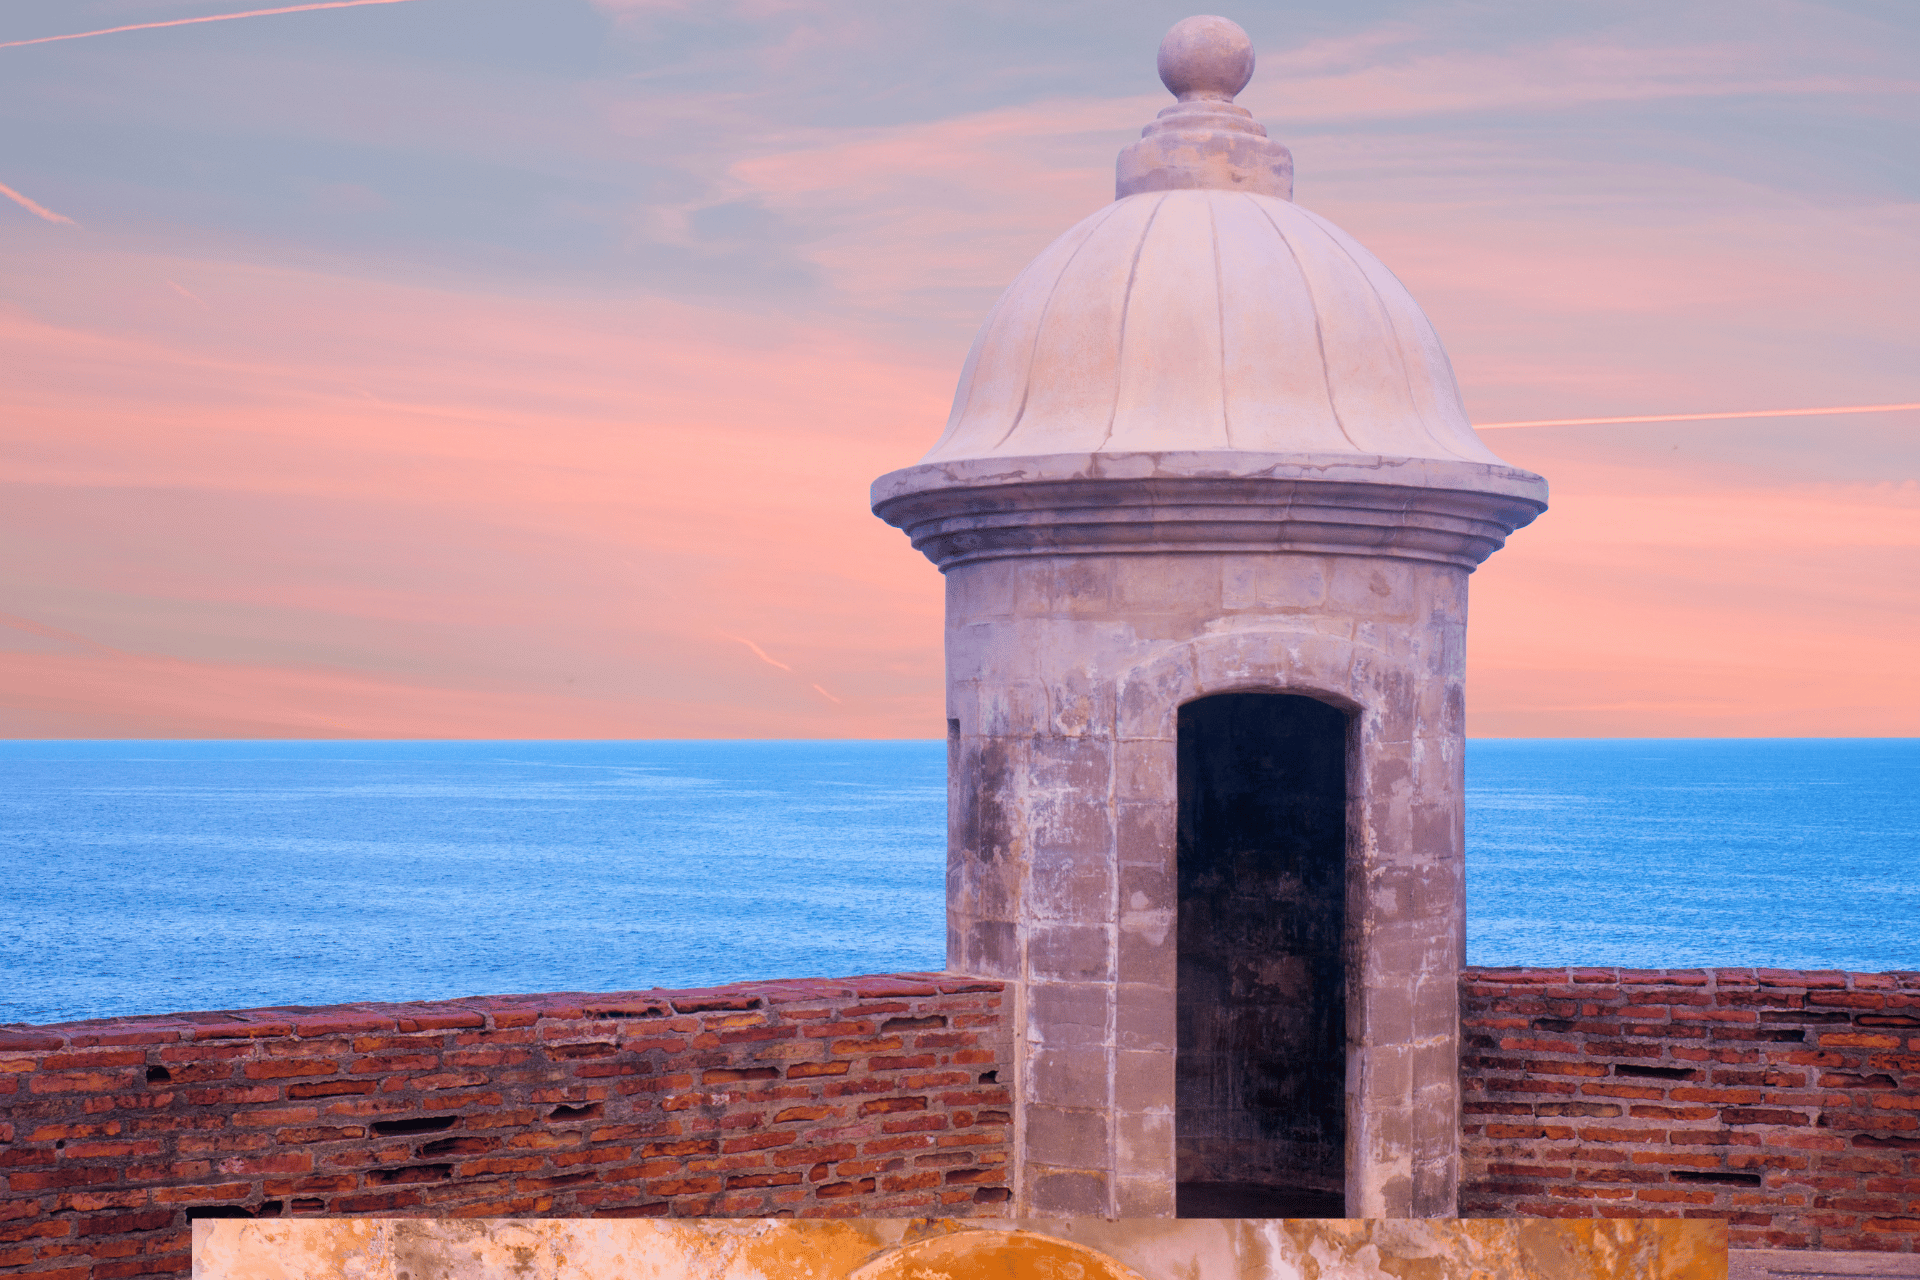 San Juan castle in Puerto Rico